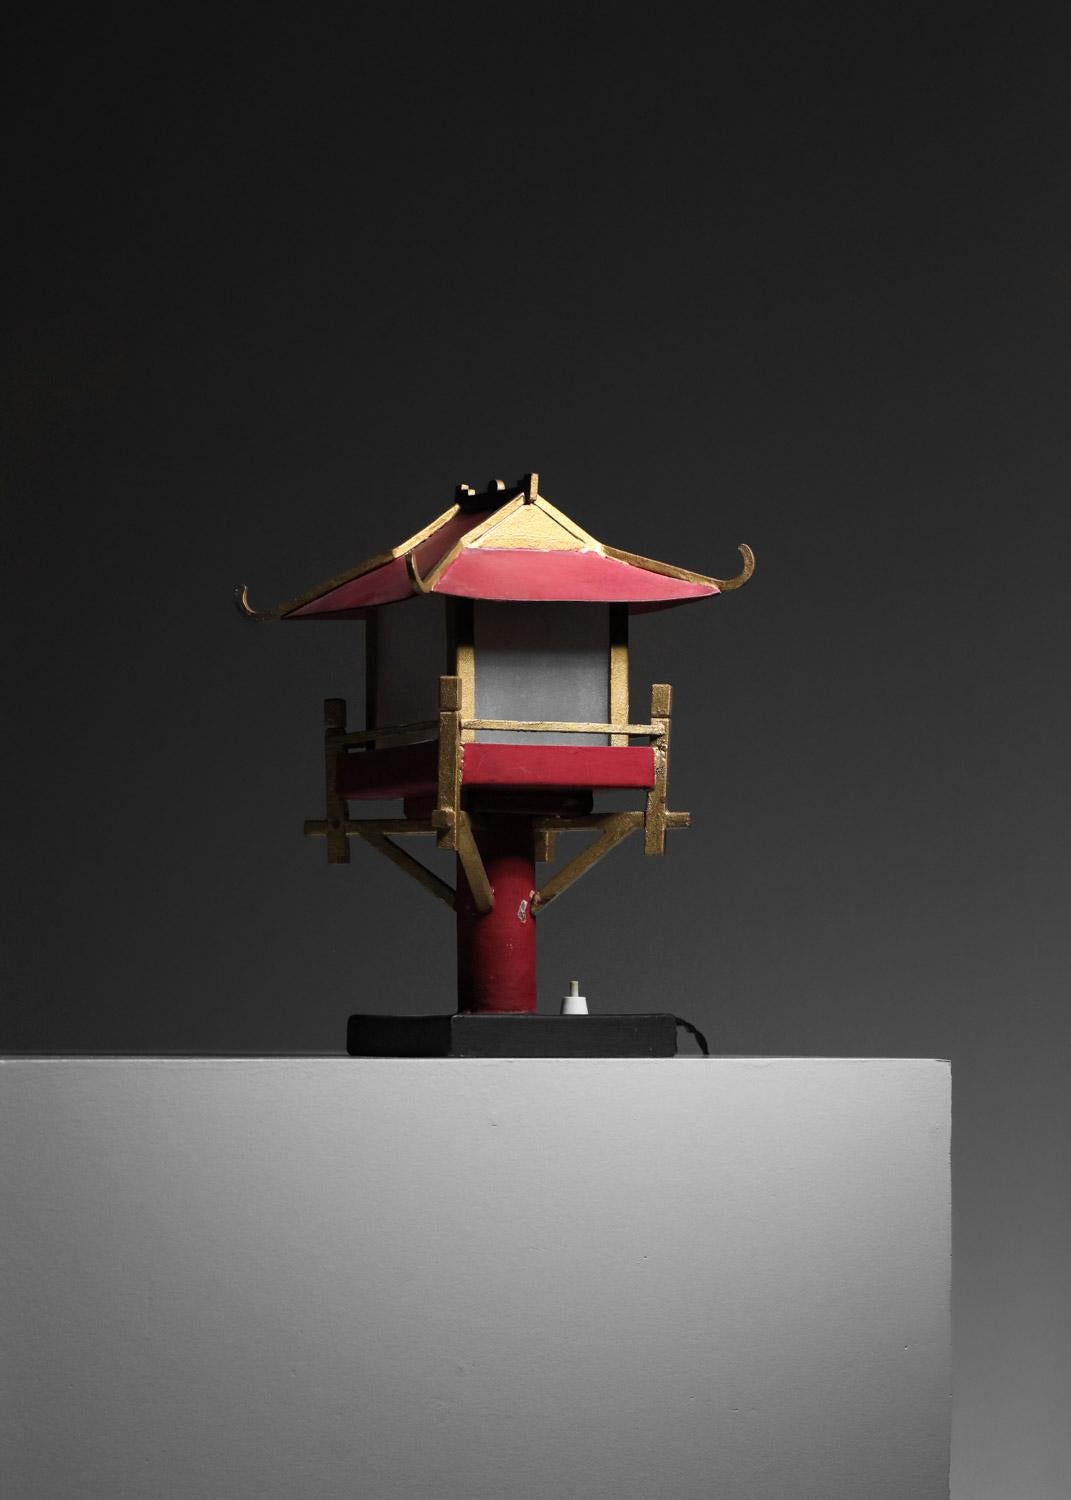 Paire de lampes de table très originales des années 50 représentant de petites pagodes chinoises. Structure métallique peinte en rouge, or et noir (peinture d'origine). Diffuseurs en verre dépoli. Lampes très décoratives, en bel état vintage avec